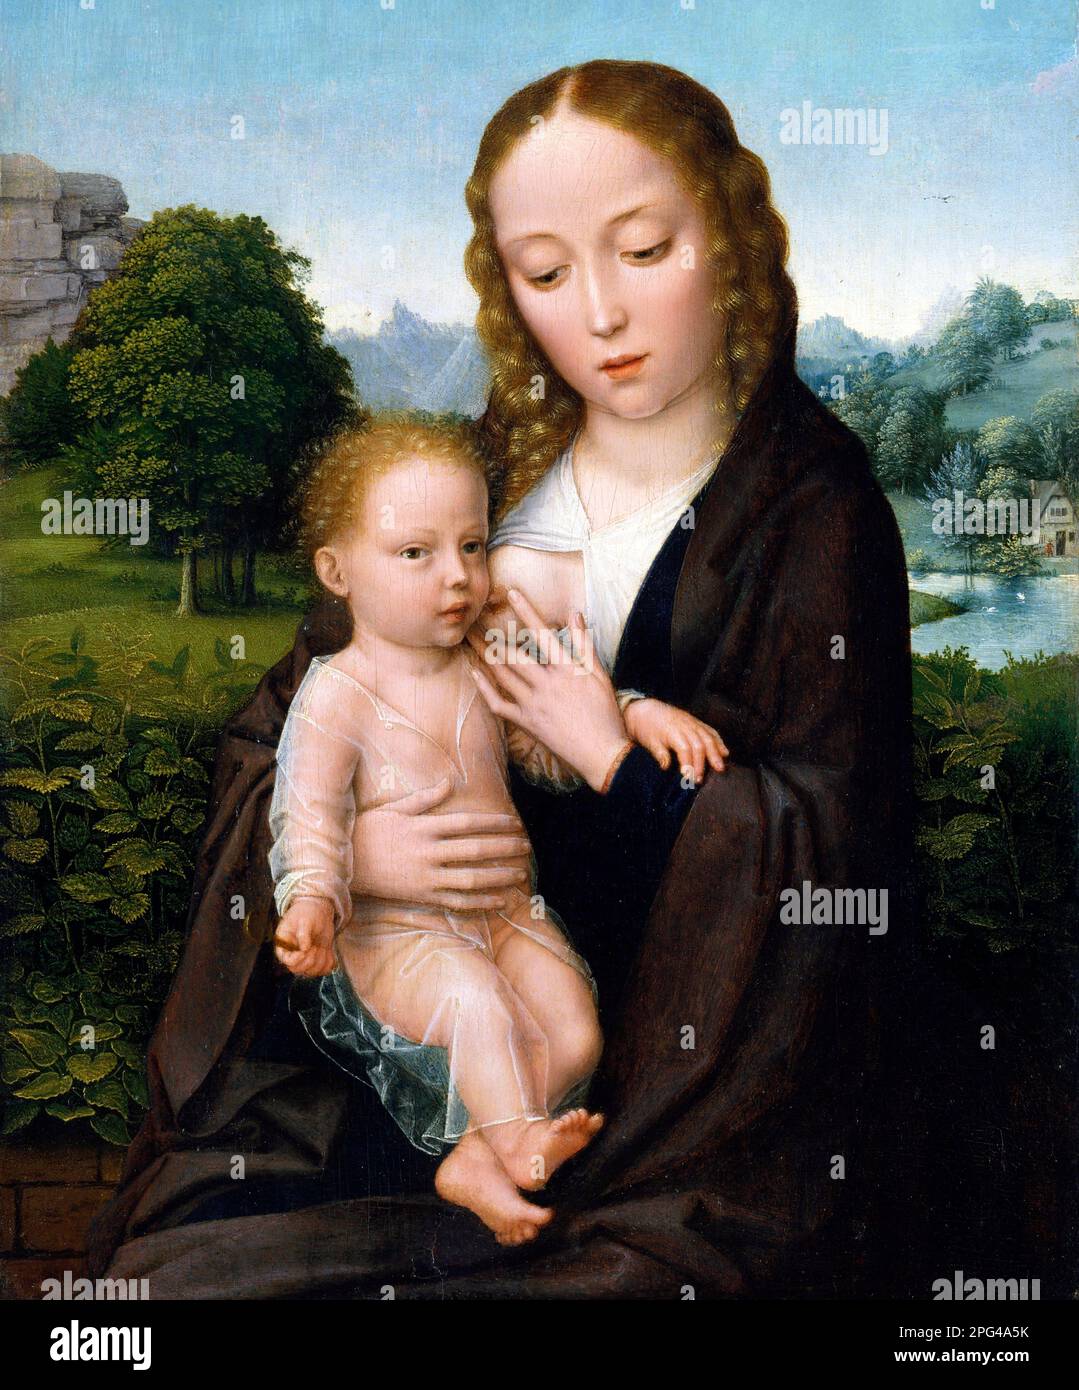 Virgen y el Niño por el artista flamenco, Simon Bening (c. 1483-1561), óleo sobre madera, c. 1520 Foto de stock